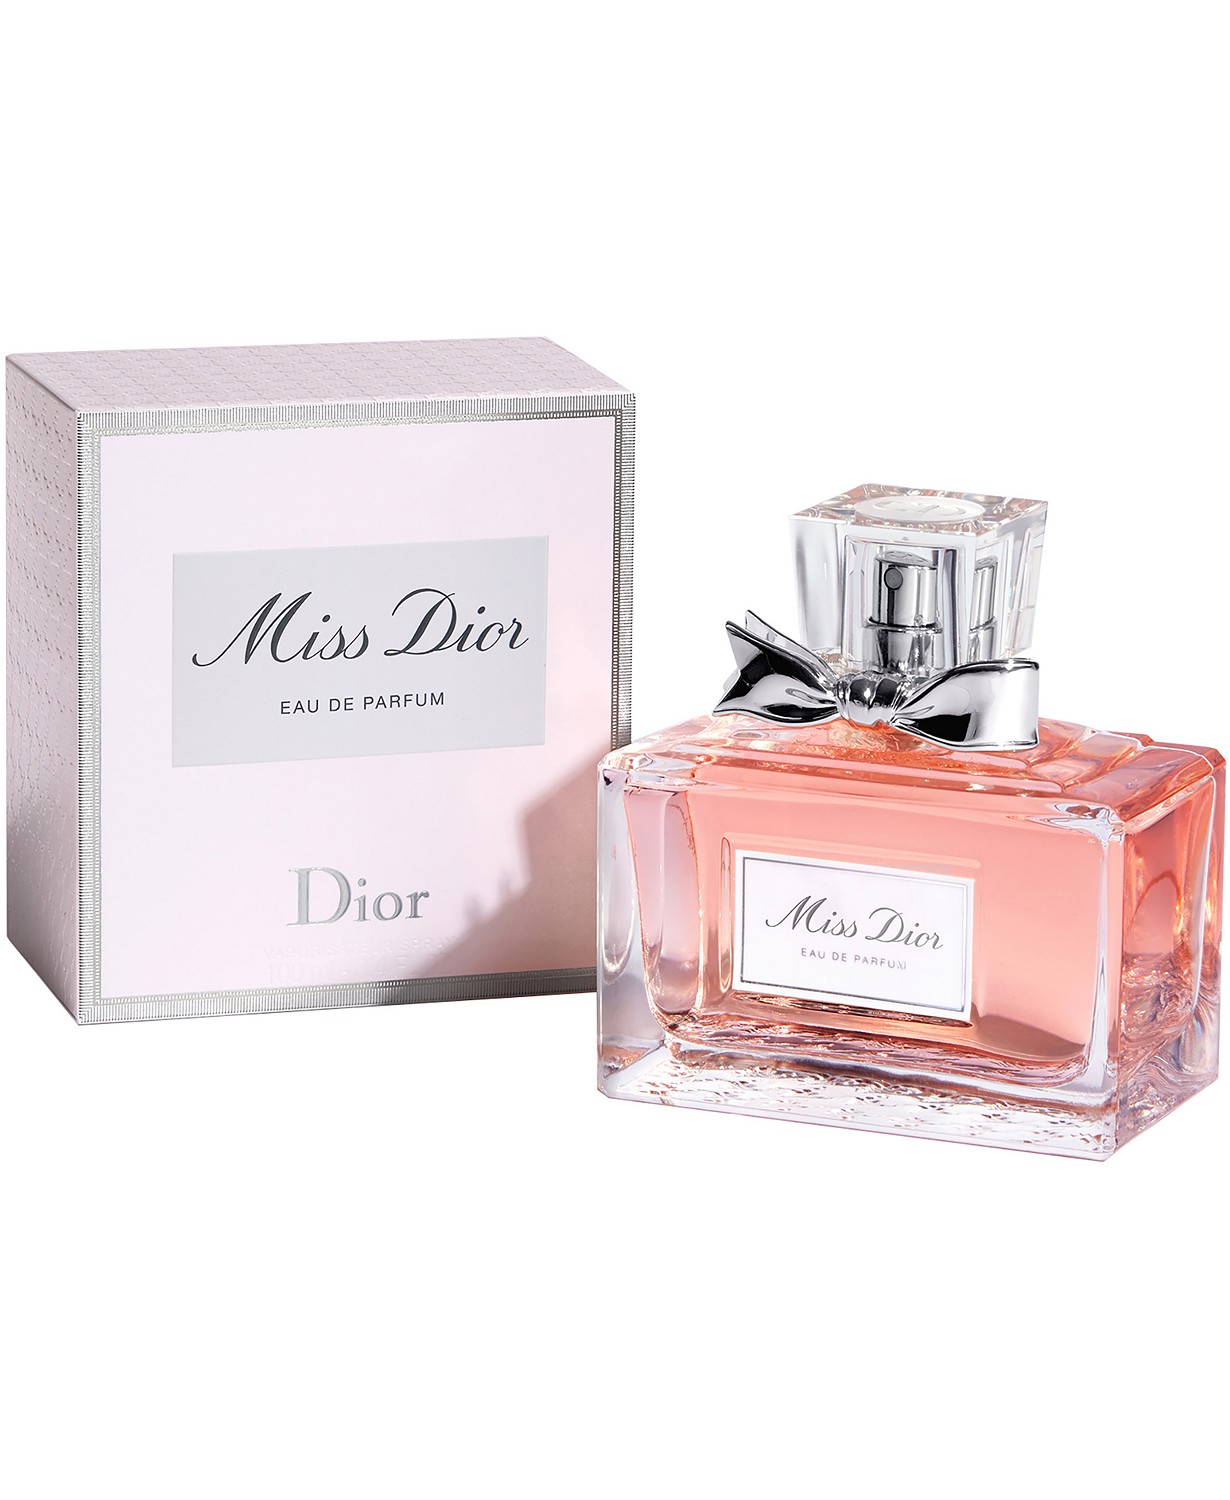 Dior Miss Dior Cherie 3.4oz Women's Eau de Parfum